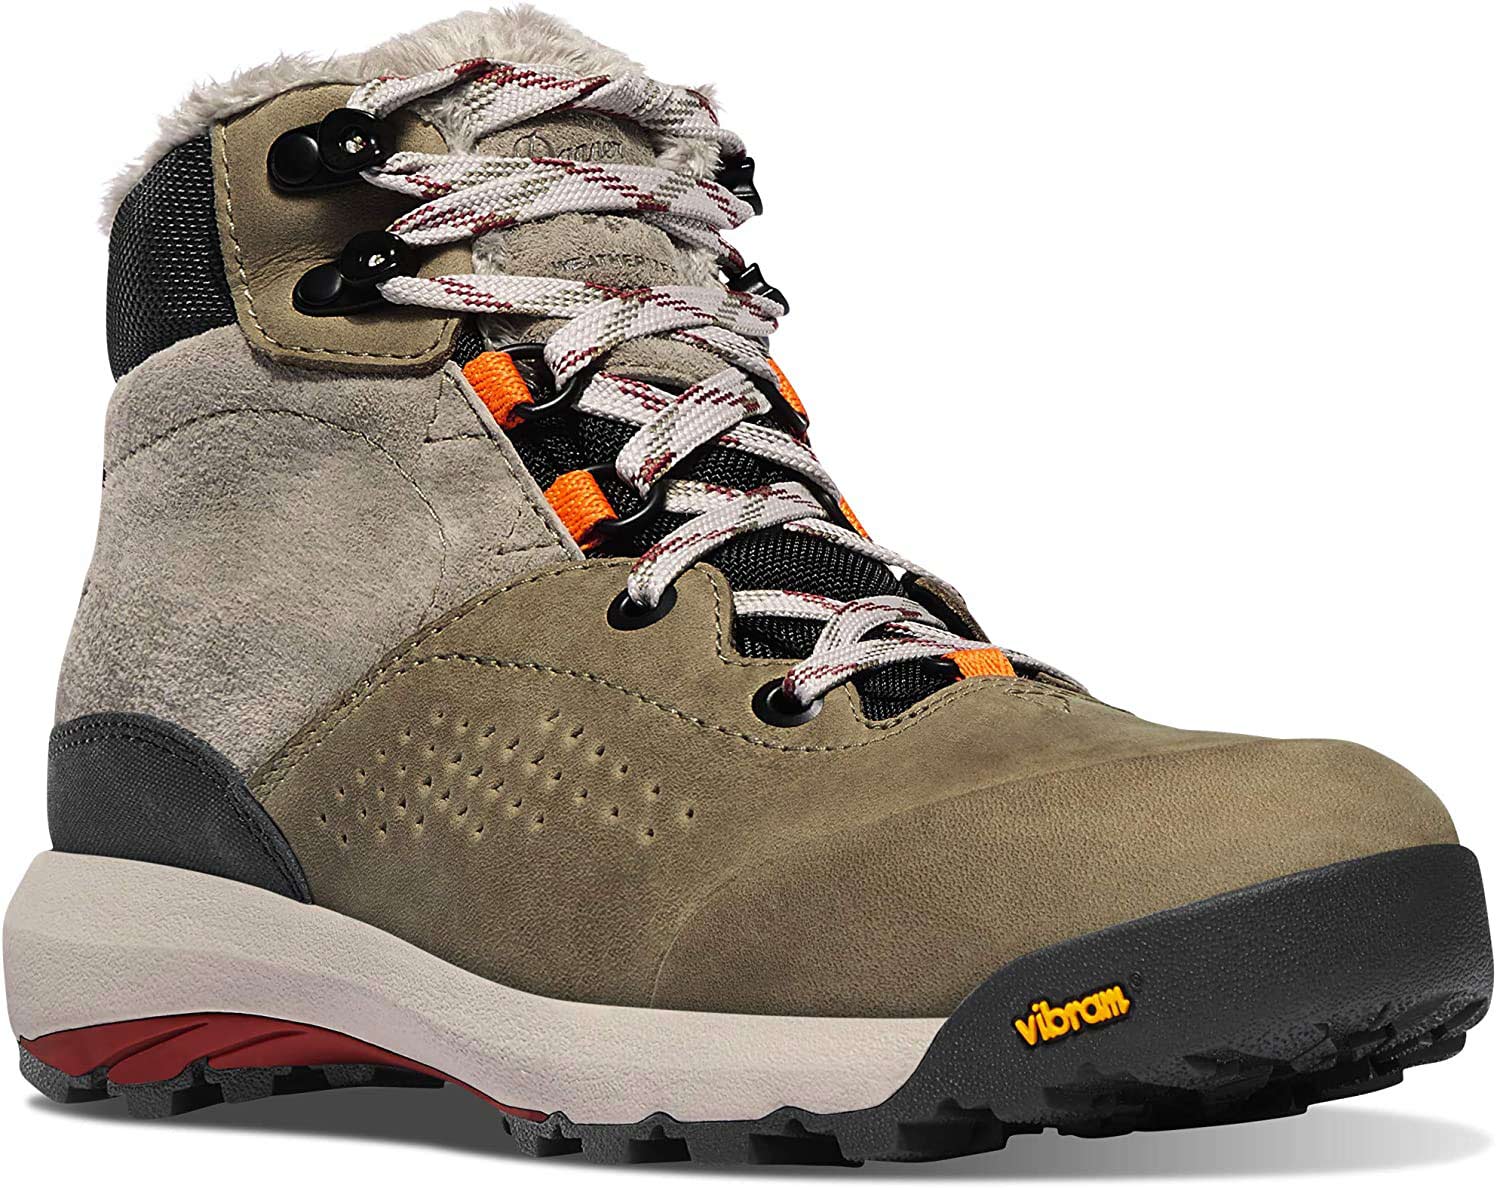 Danner Womenâs Inquire Mid-Winter Waterproof Hiking Boots